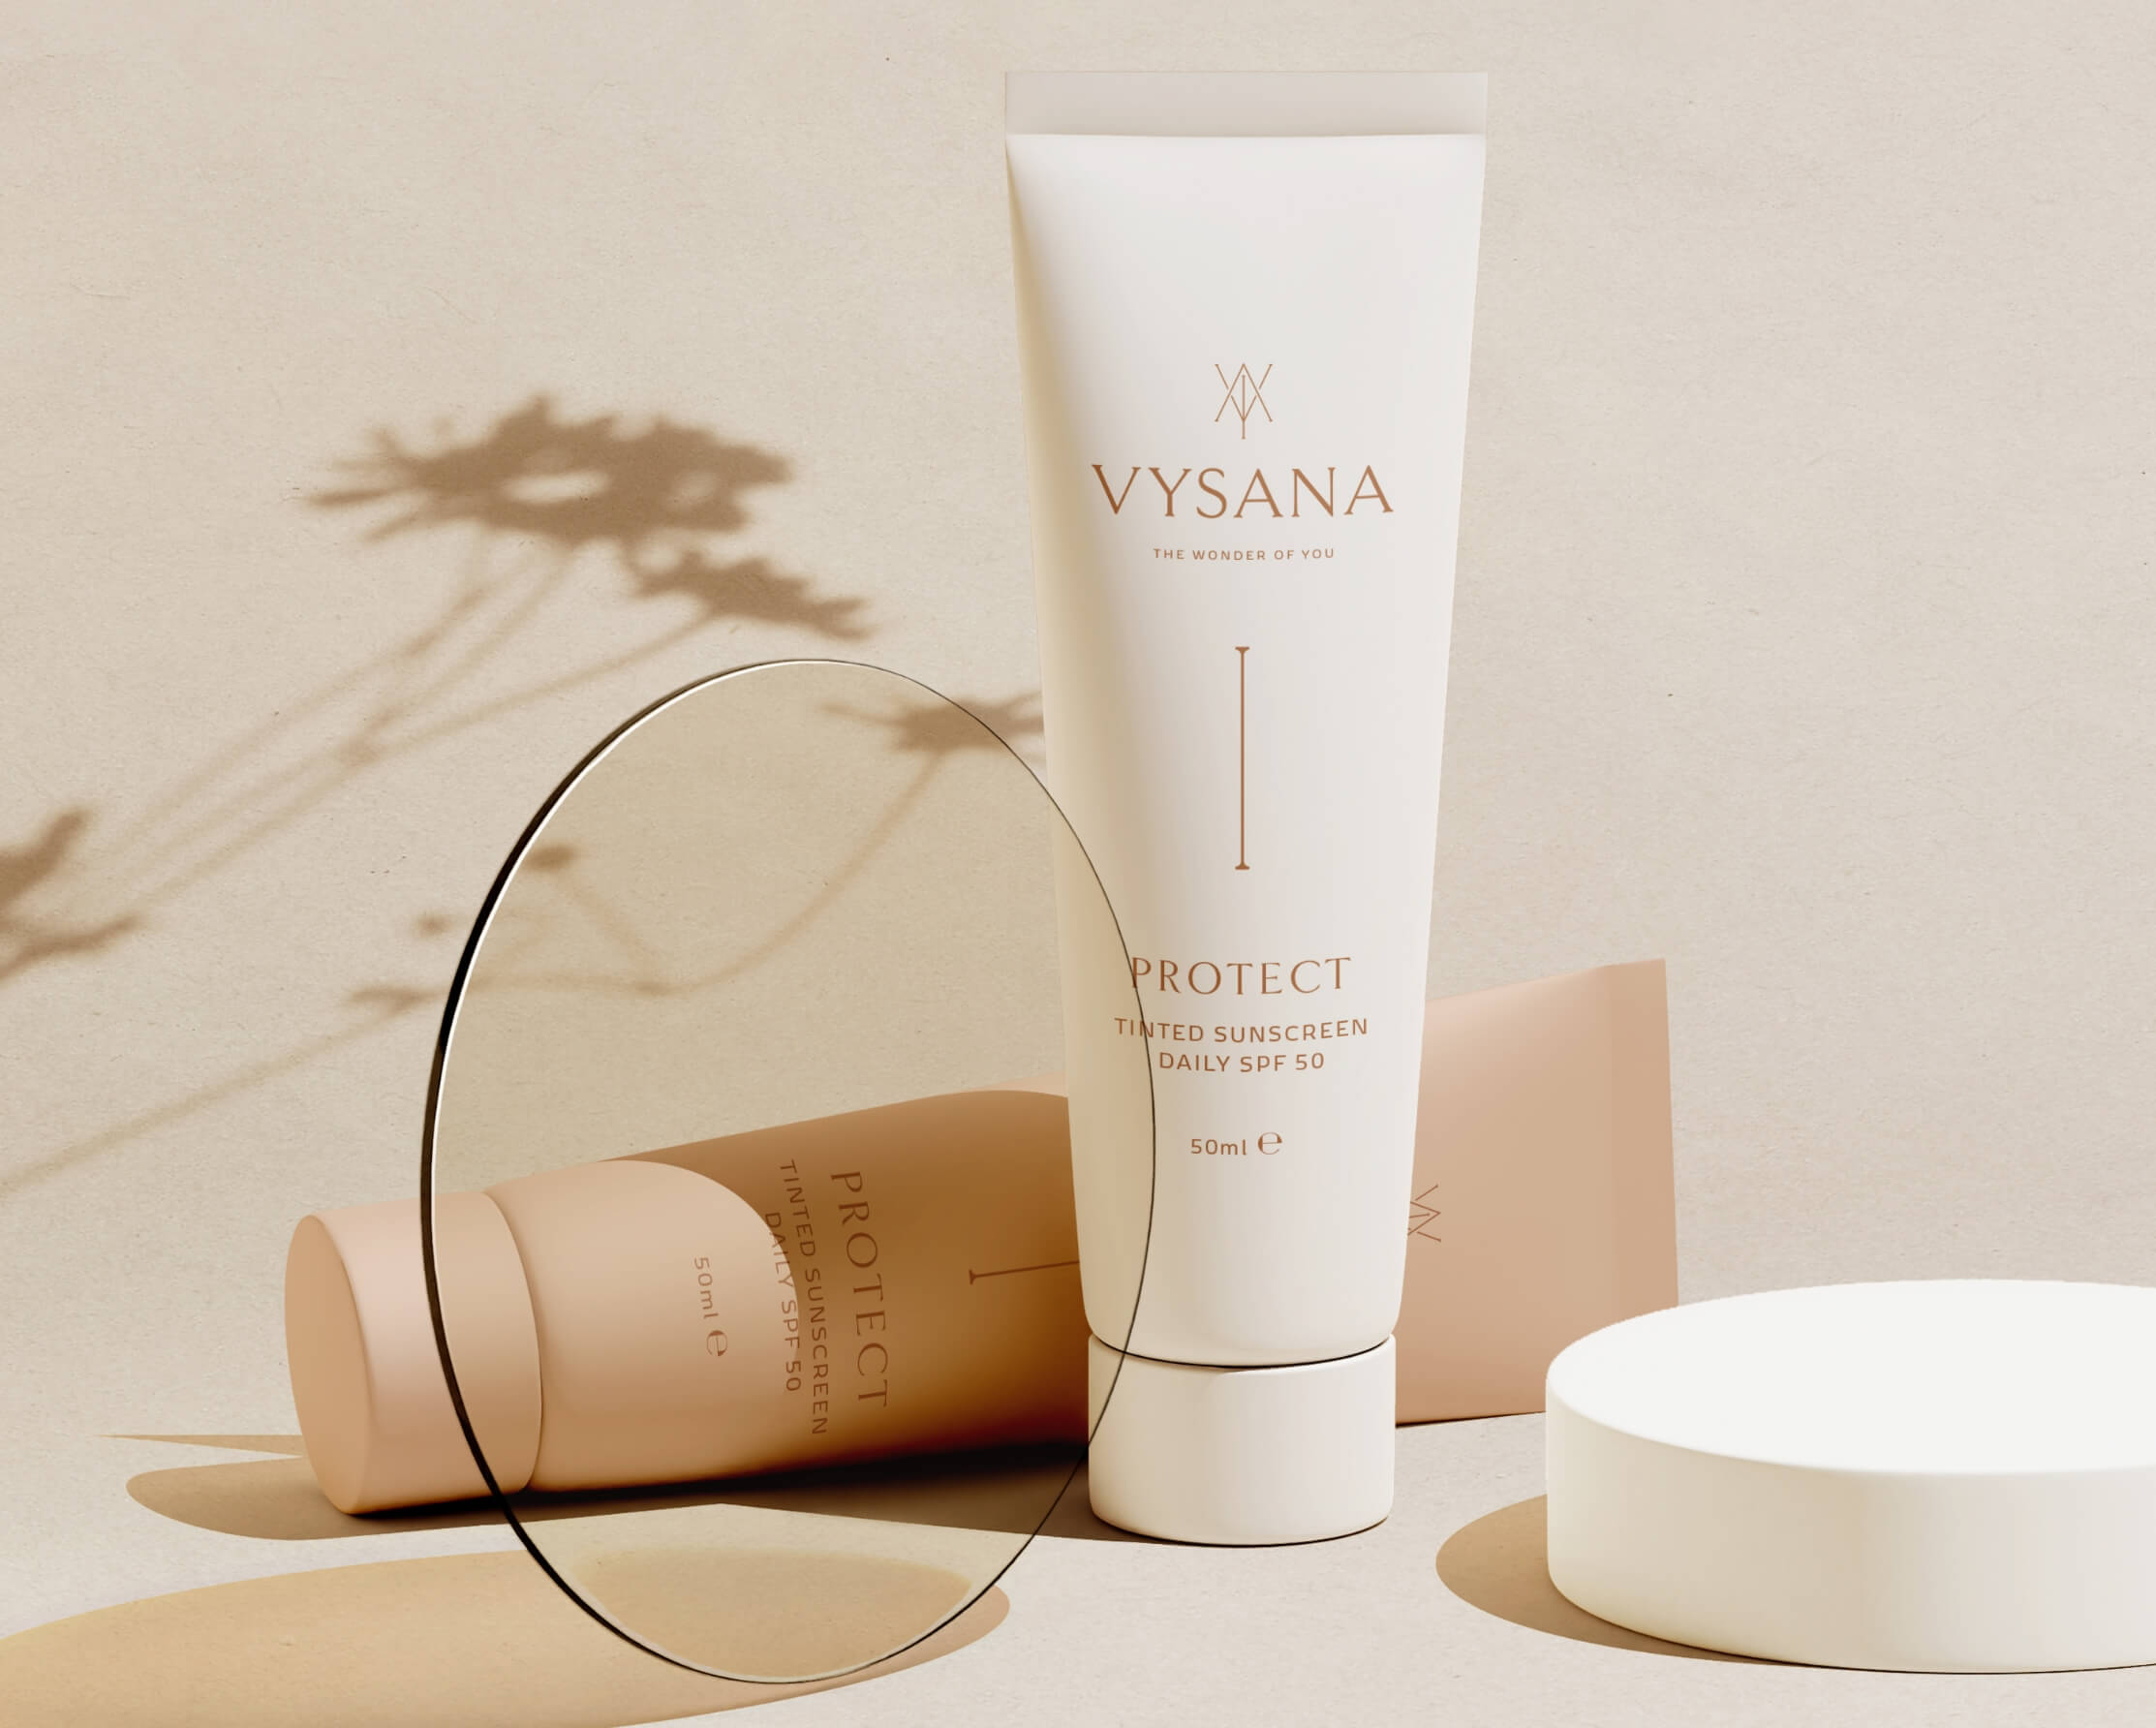 Luxury aesthetic skincare packaging design for Vysana bottles